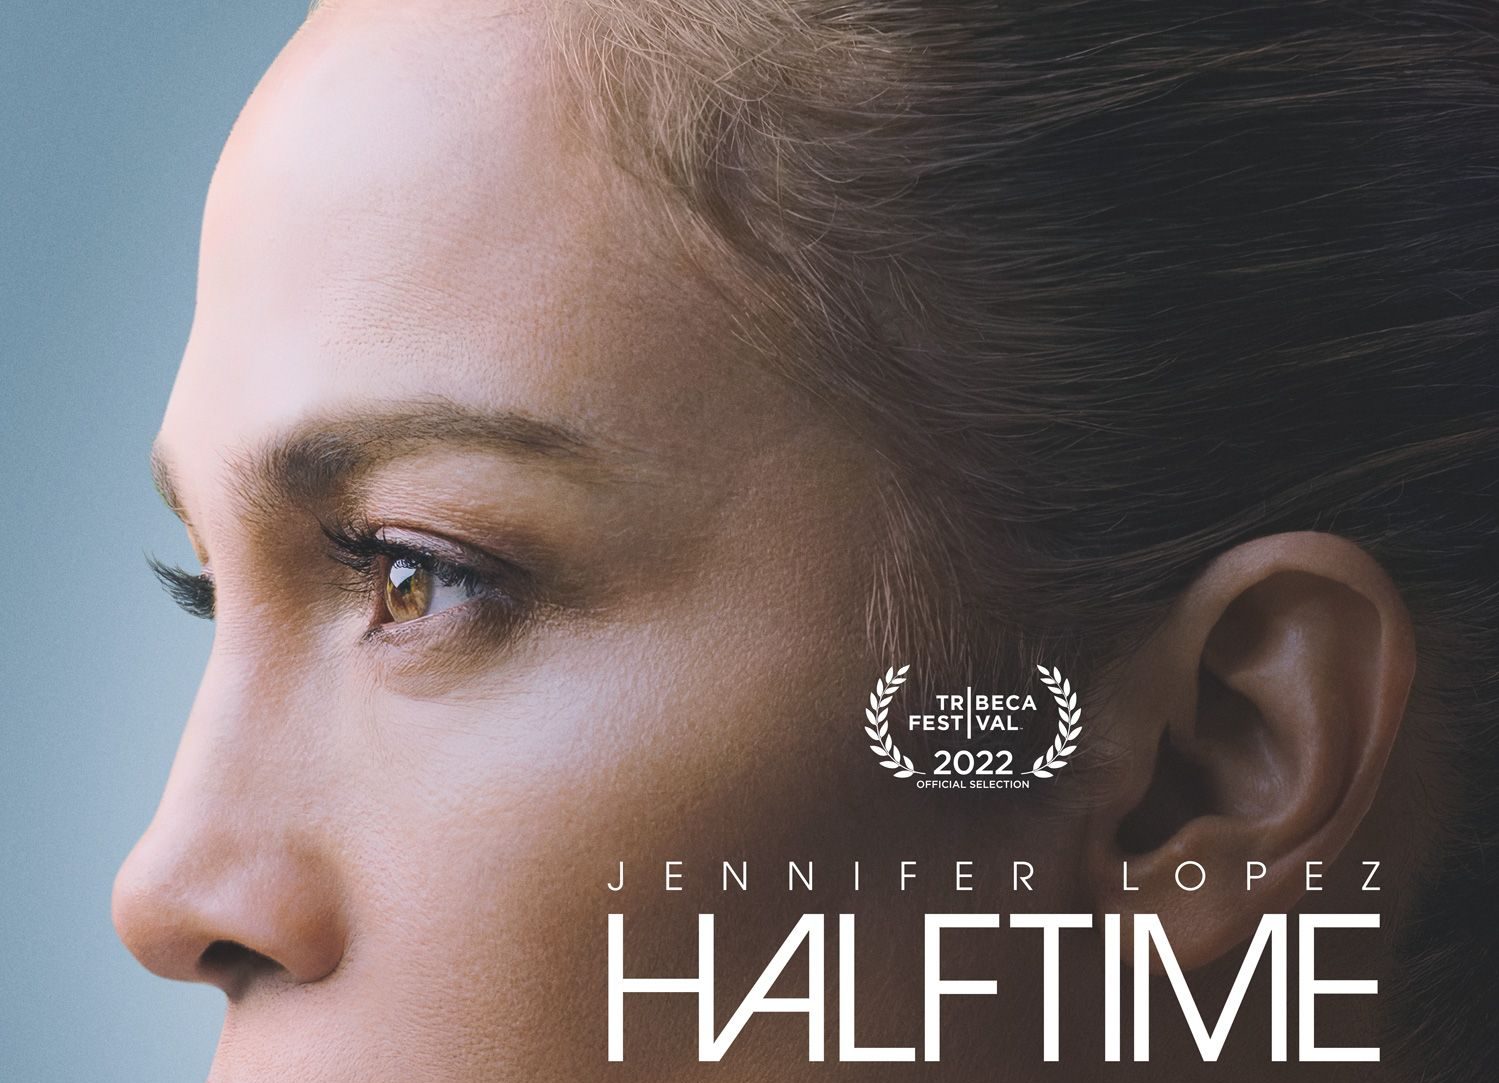 Halftime, Jennifer Lopez